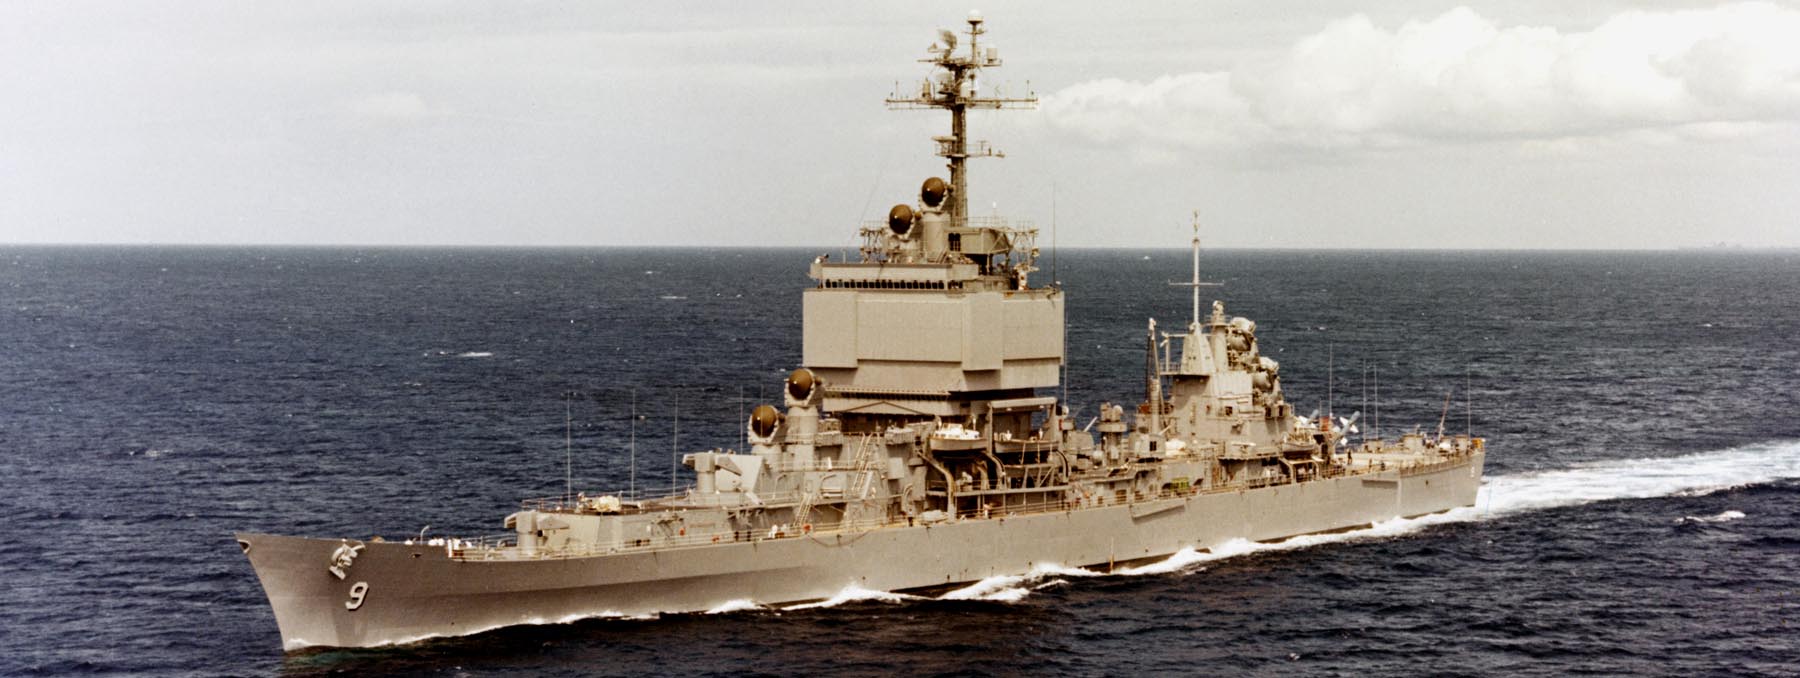 世界上第一艘核动力巡洋舰,美国长滩号虽然核动力巡洋舰这类舰种不是